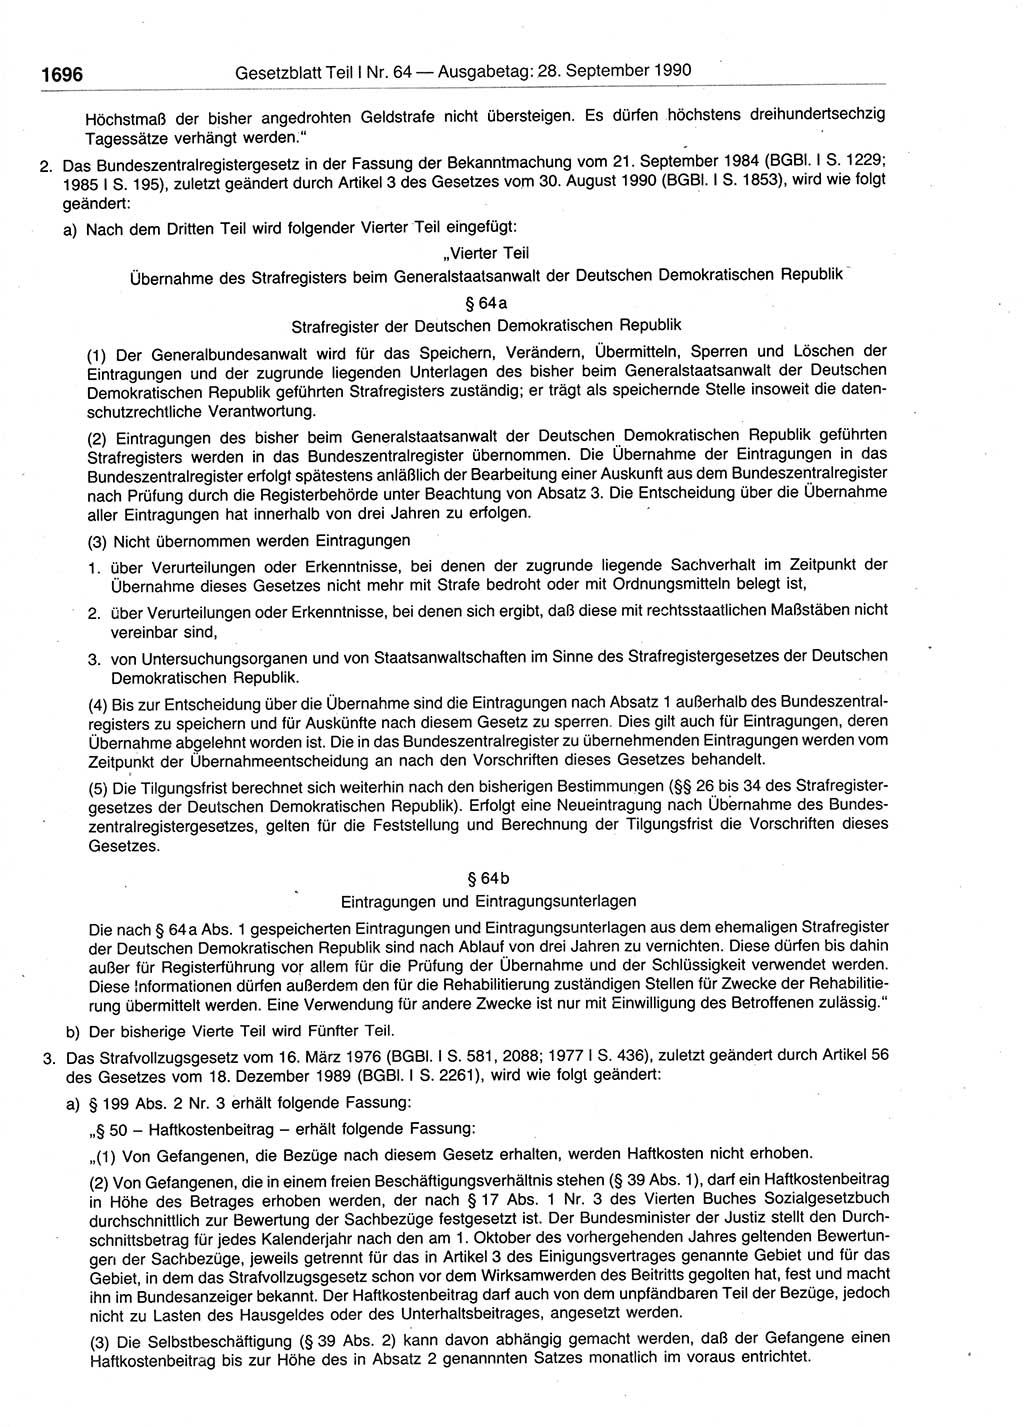 Gesetzblatt (GBl.) der Deutschen Demokratischen Republik (DDR) Teil Ⅰ 1990, Seite 1696 (GBl. DDR Ⅰ 1990, S. 1696)